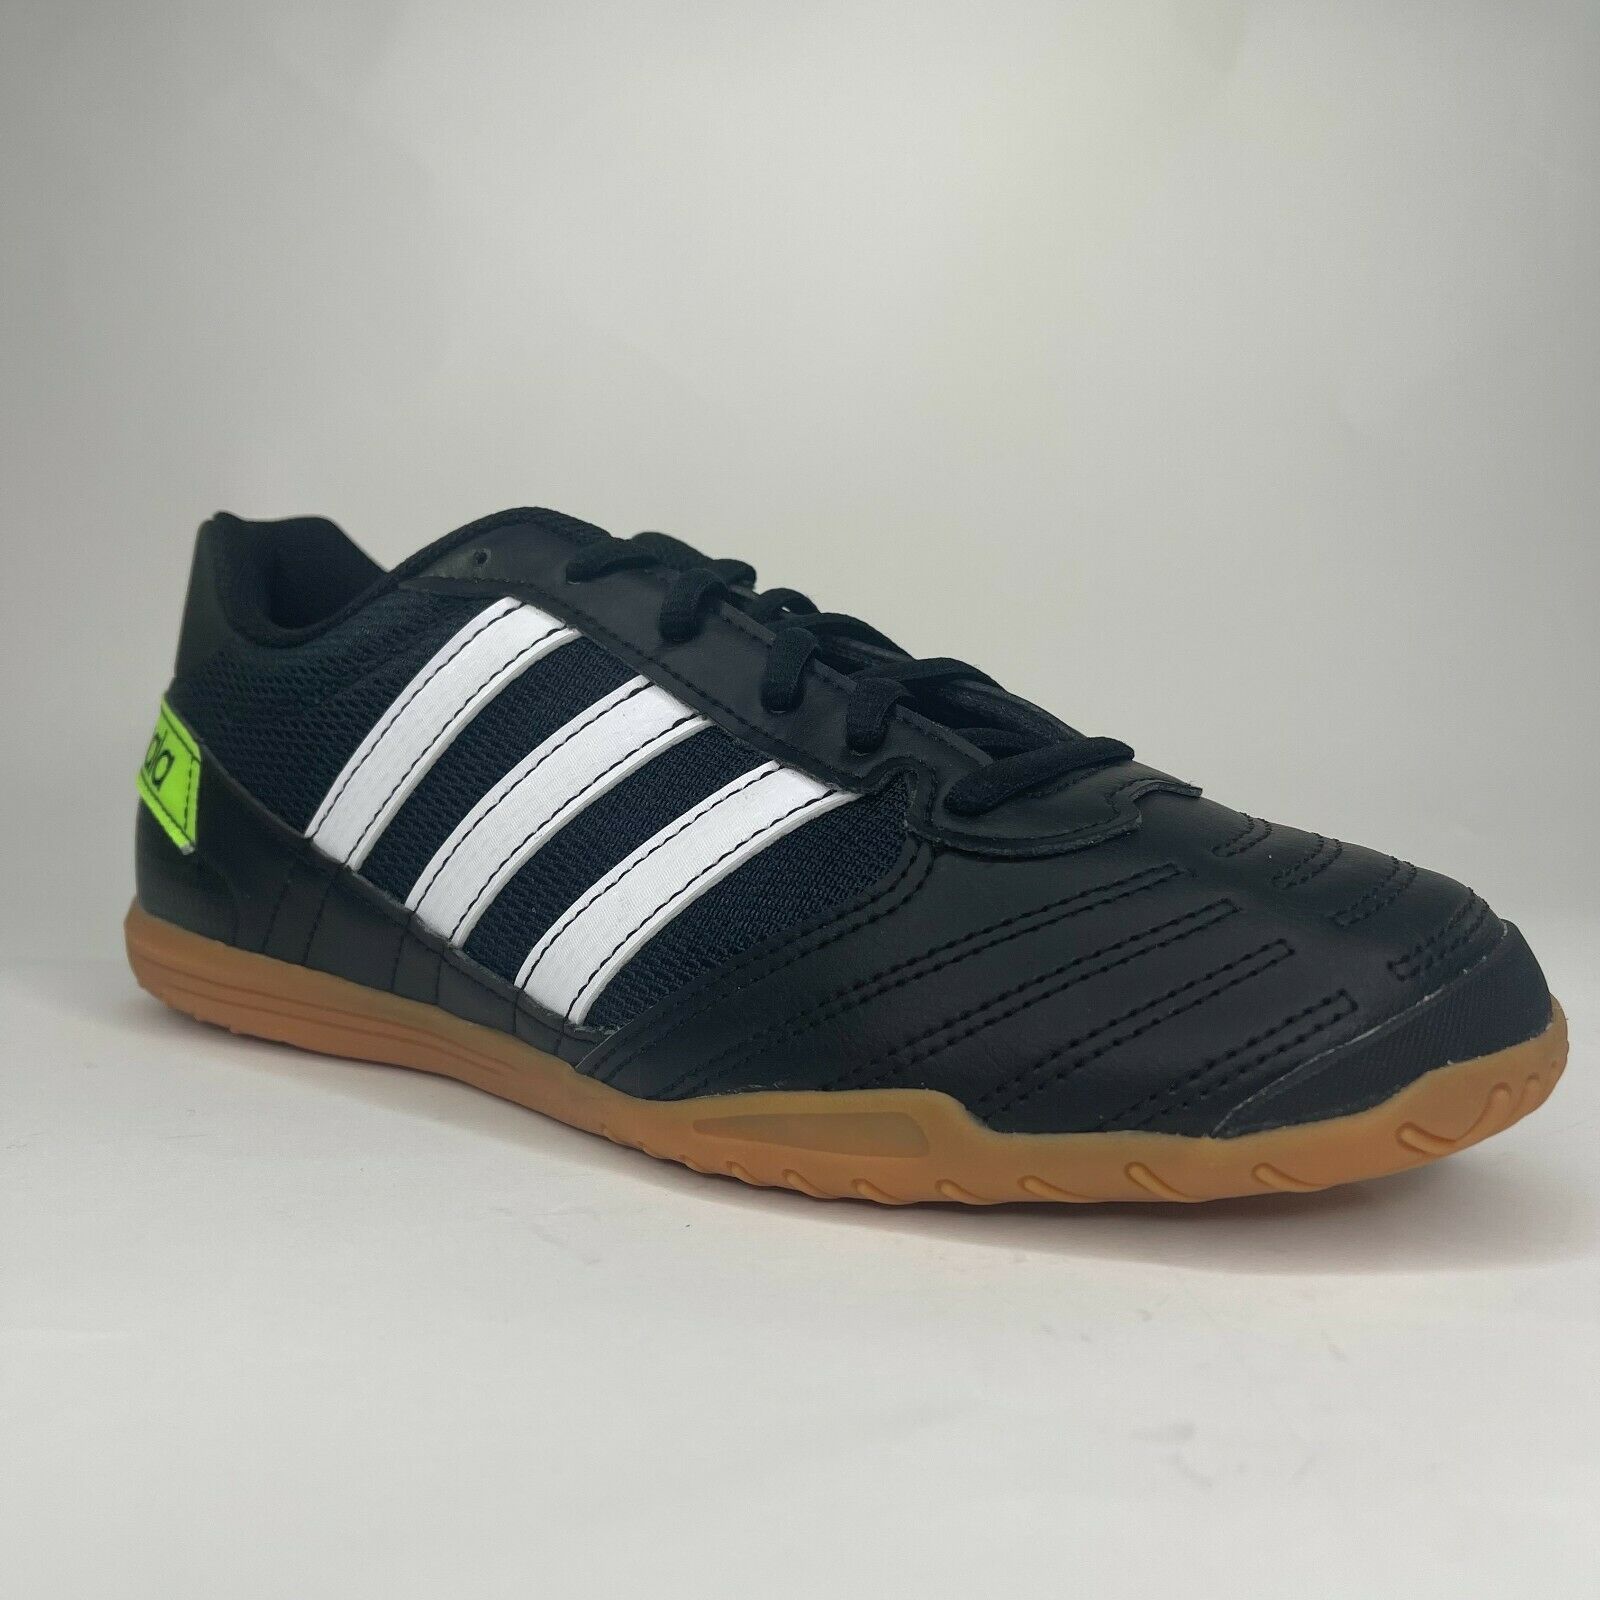 Adidas Mens Super Sala Black White Lime Indoor Soccer Shoes Size 9 FV5456 NIB